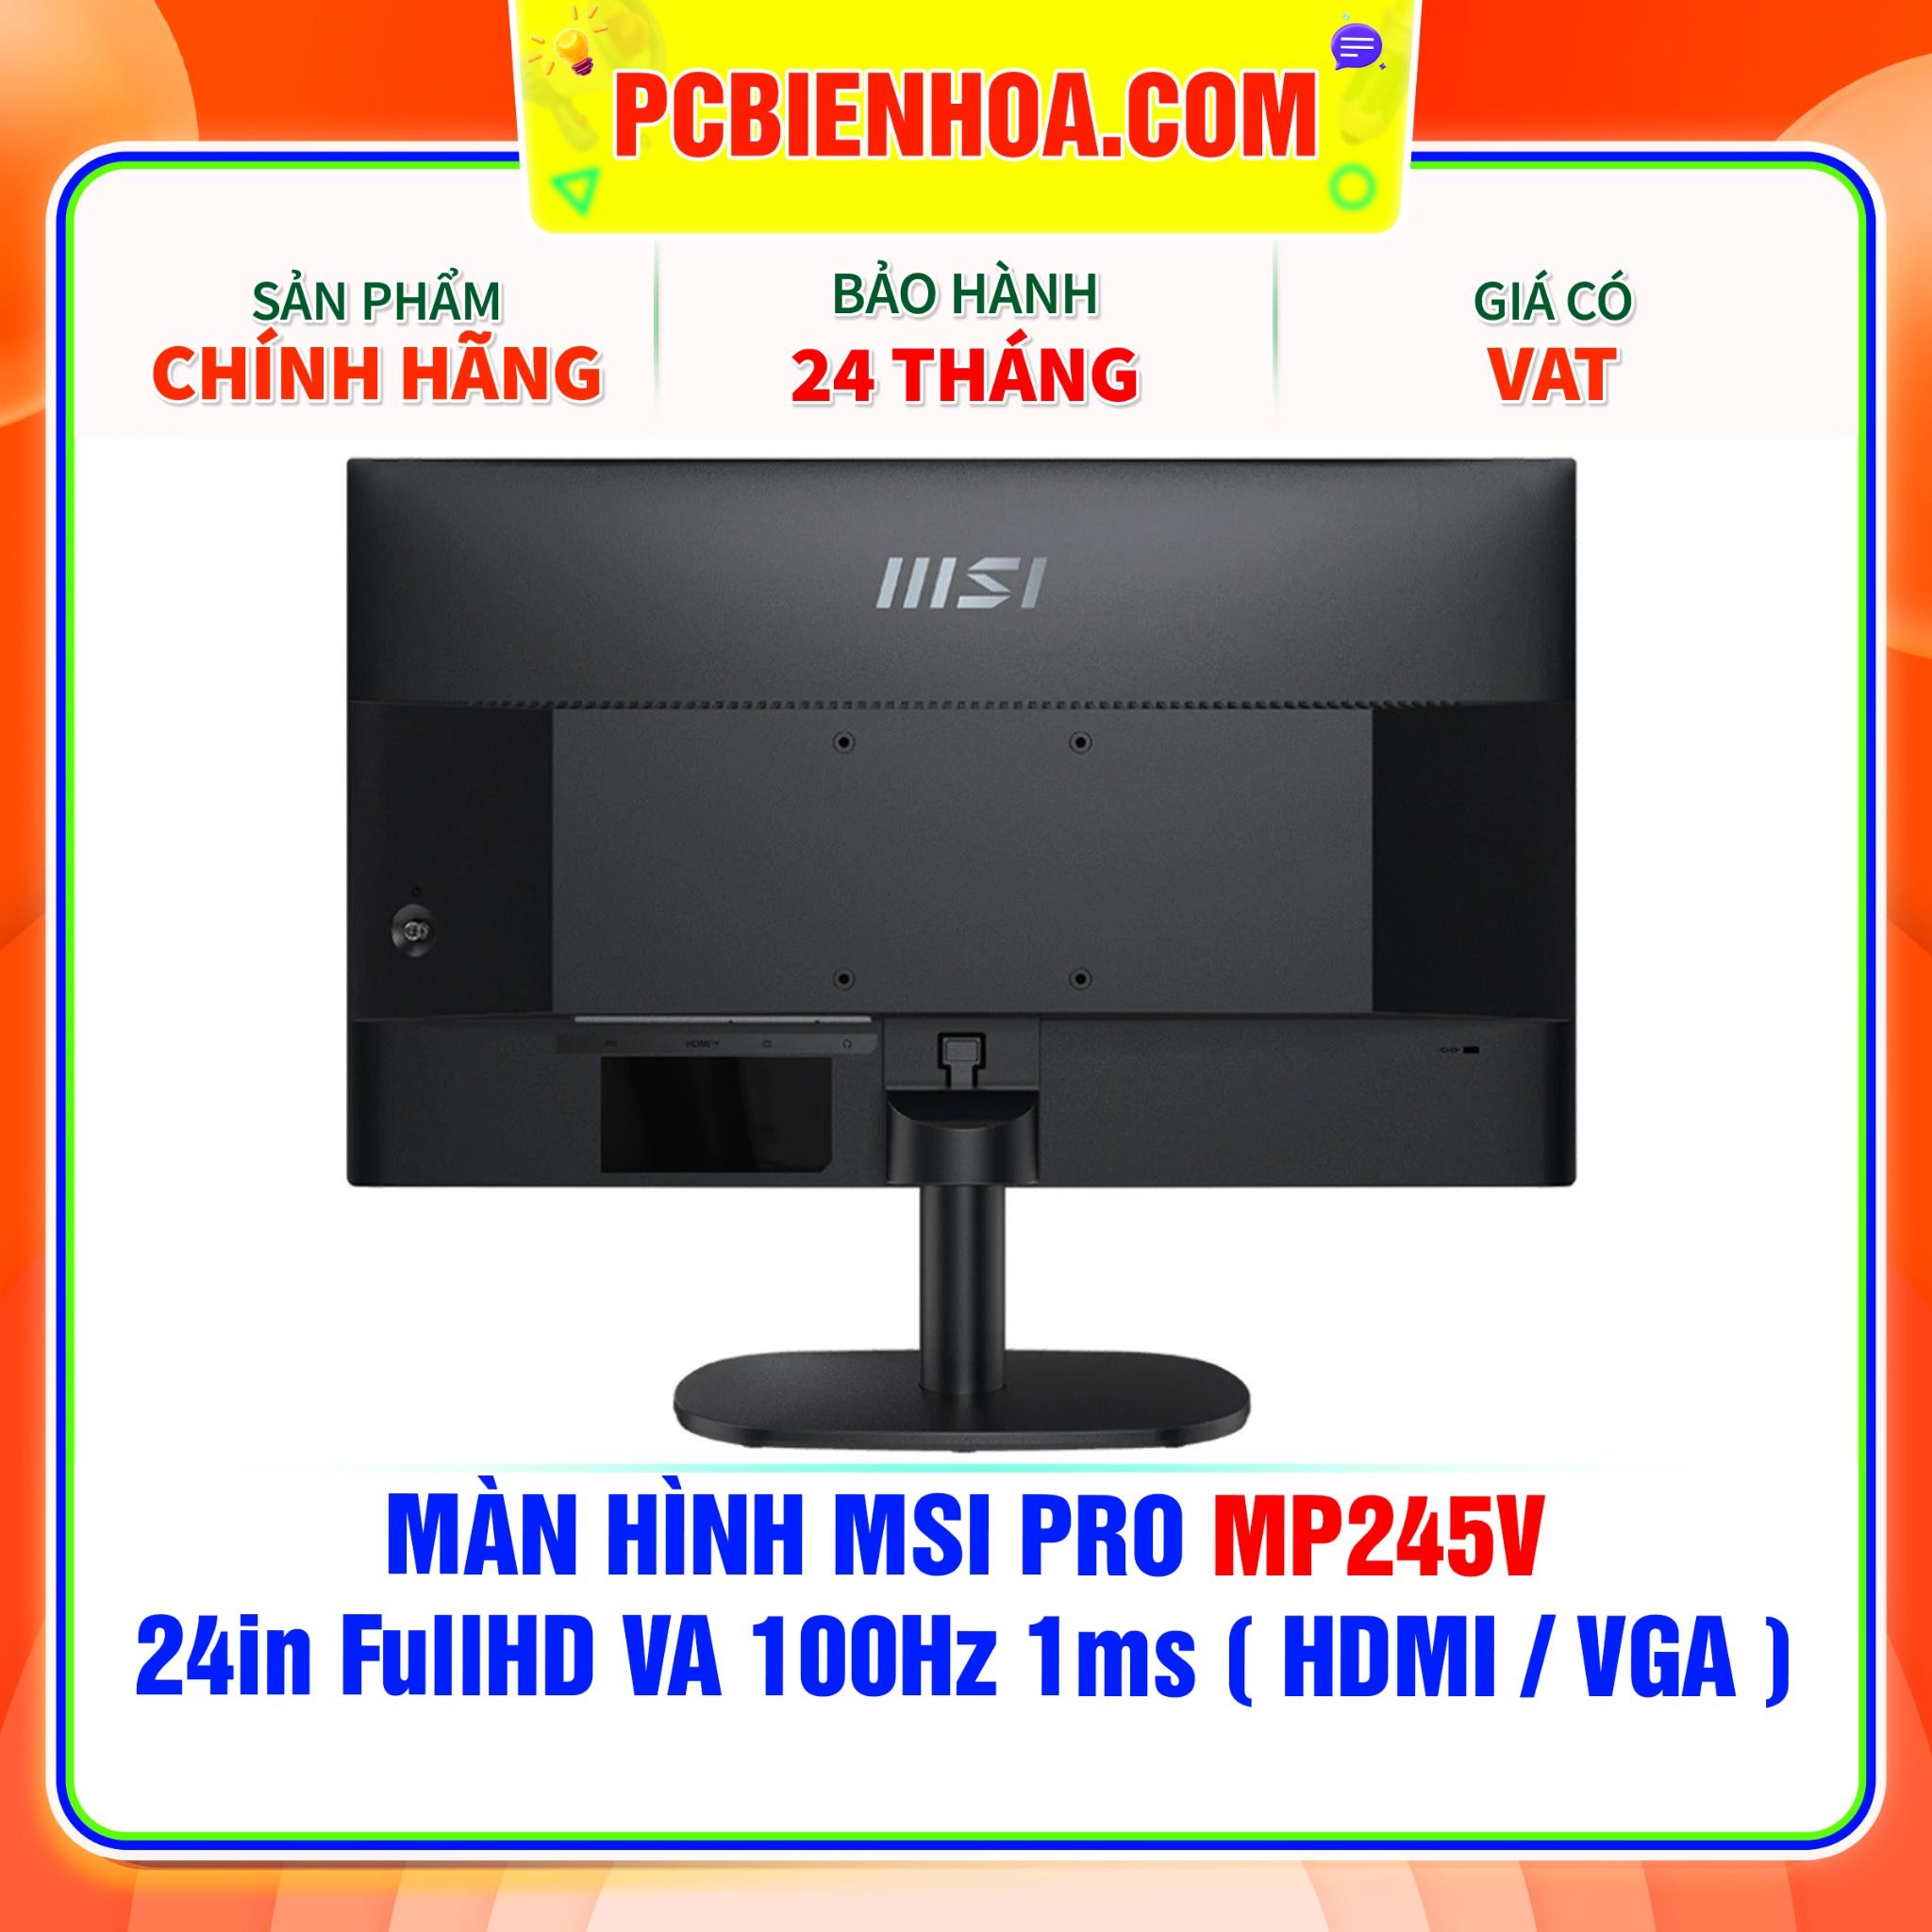  MÀN HÌNH MSI PRO MP245V - 24in FullHD VA 100Hz 1ms ( HDMI / VGA ) 